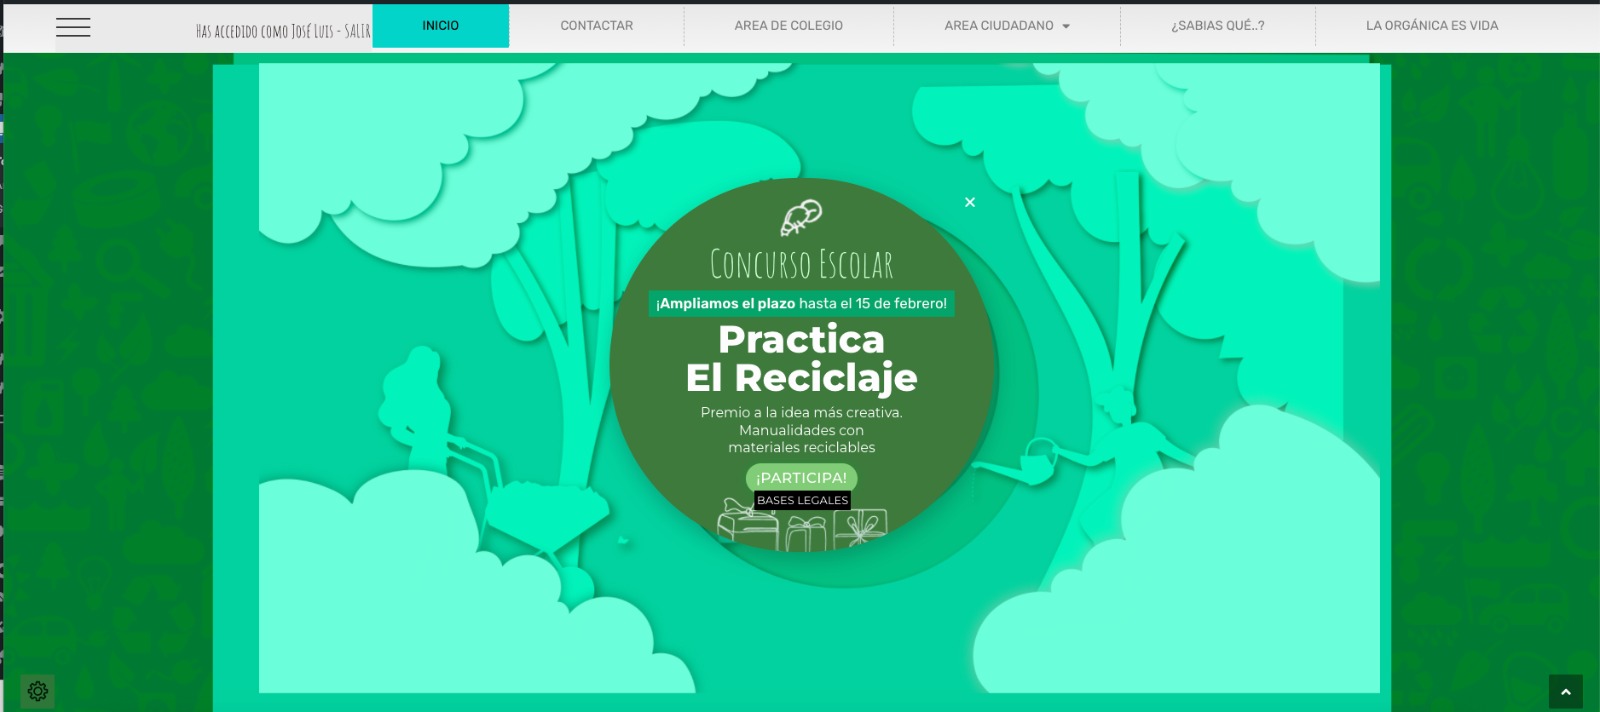 RSU Ciudad Real convoca el concurso de manualidades “Practica el Reciclaje” dirigido a colegios de Primaria